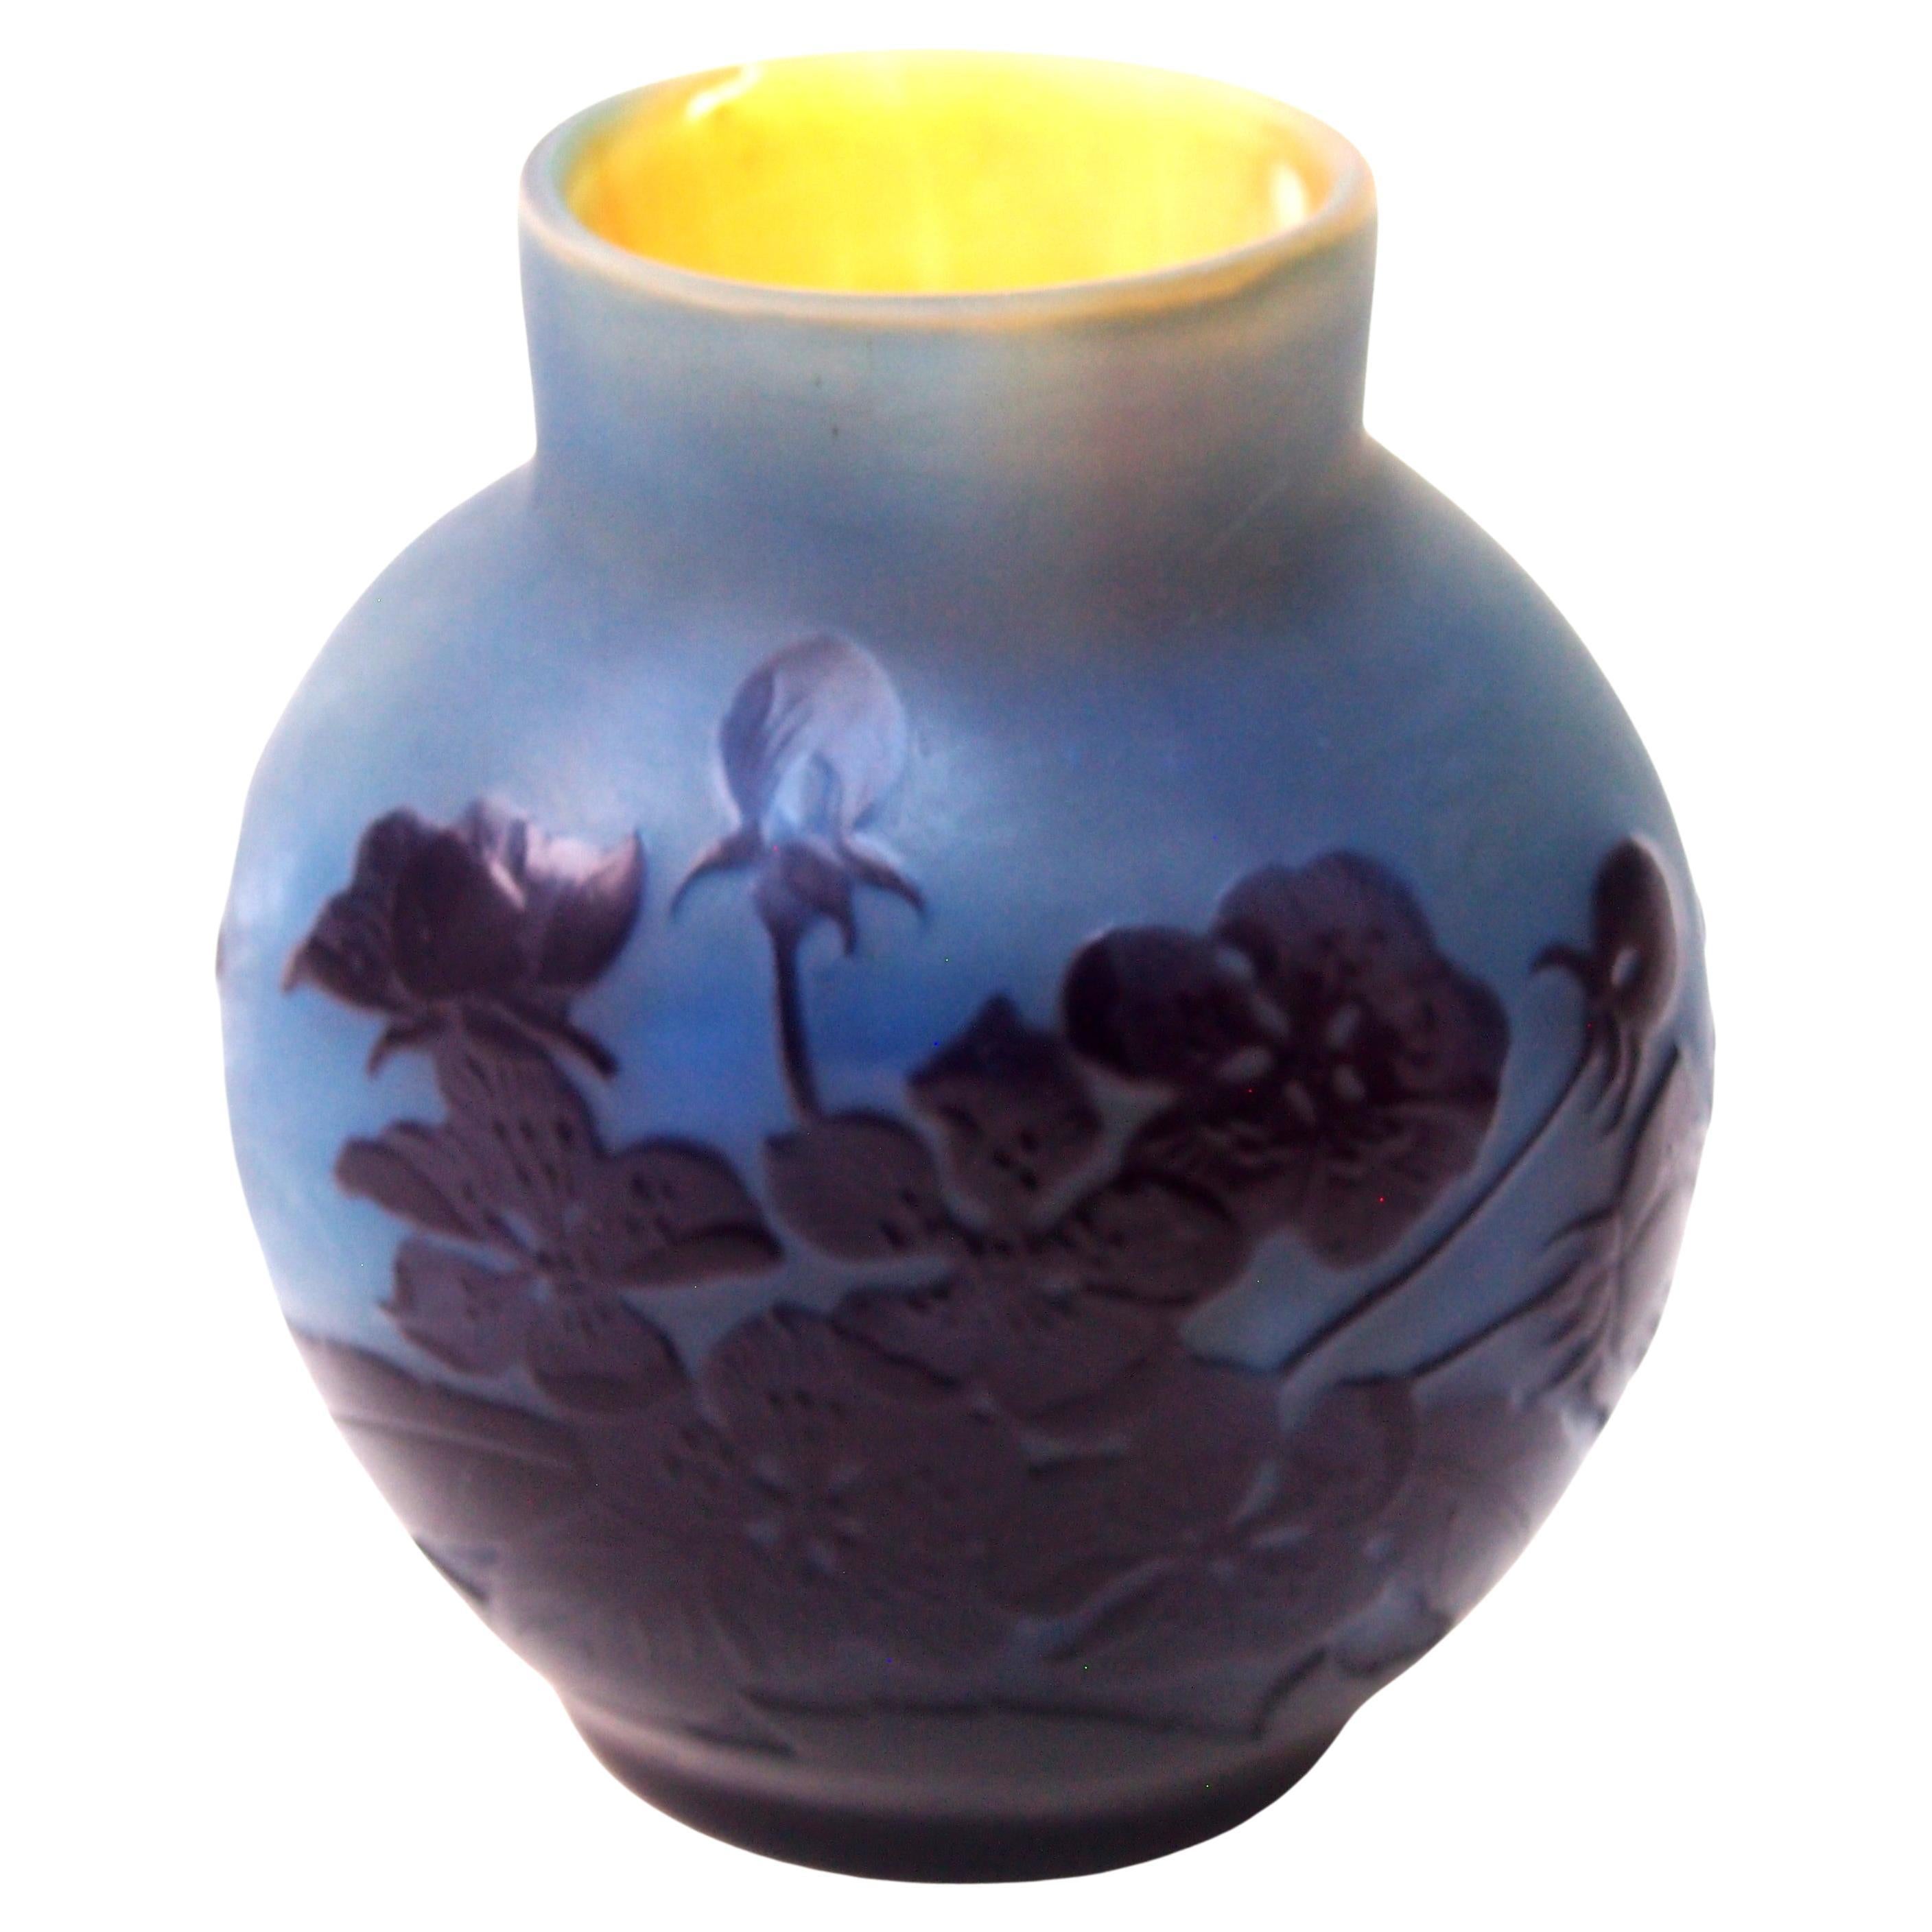 Französisches Jugendstil Emile Galle Kamee-Glas  Vase mit Mondschein um 1910